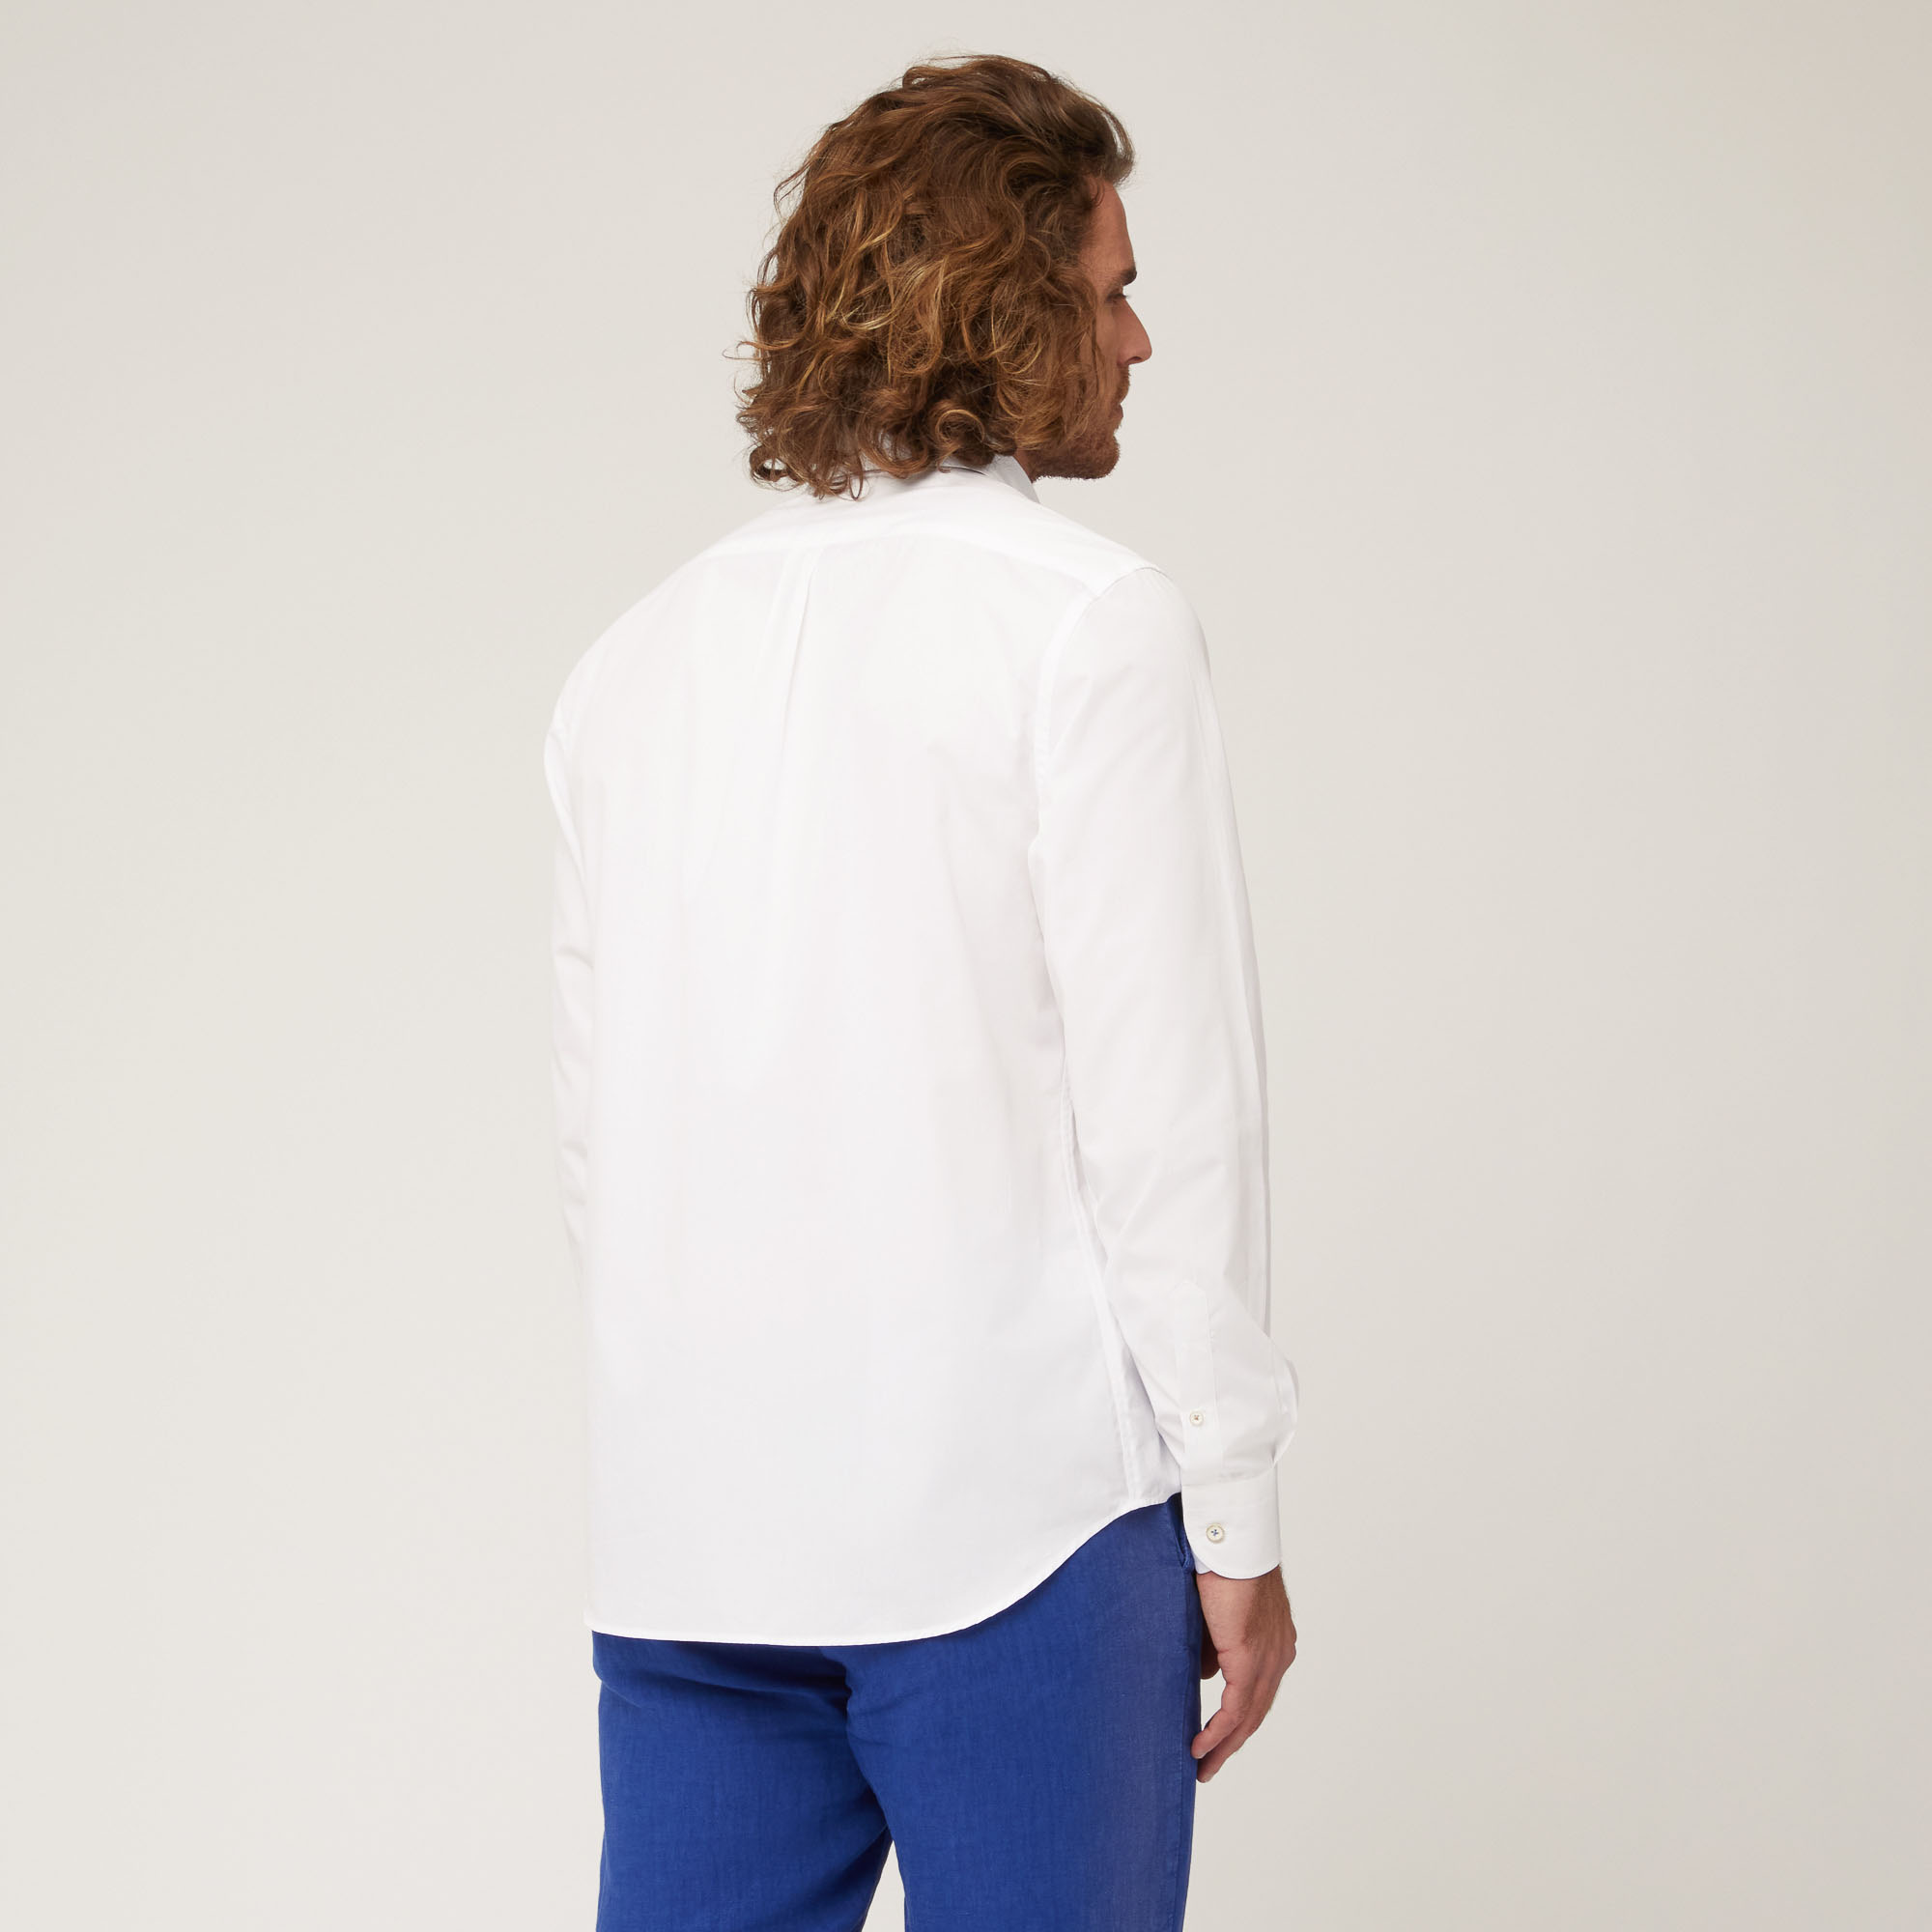 Camicia In Cotone Con Inserti A Contrasto, Bianco, large image number 1